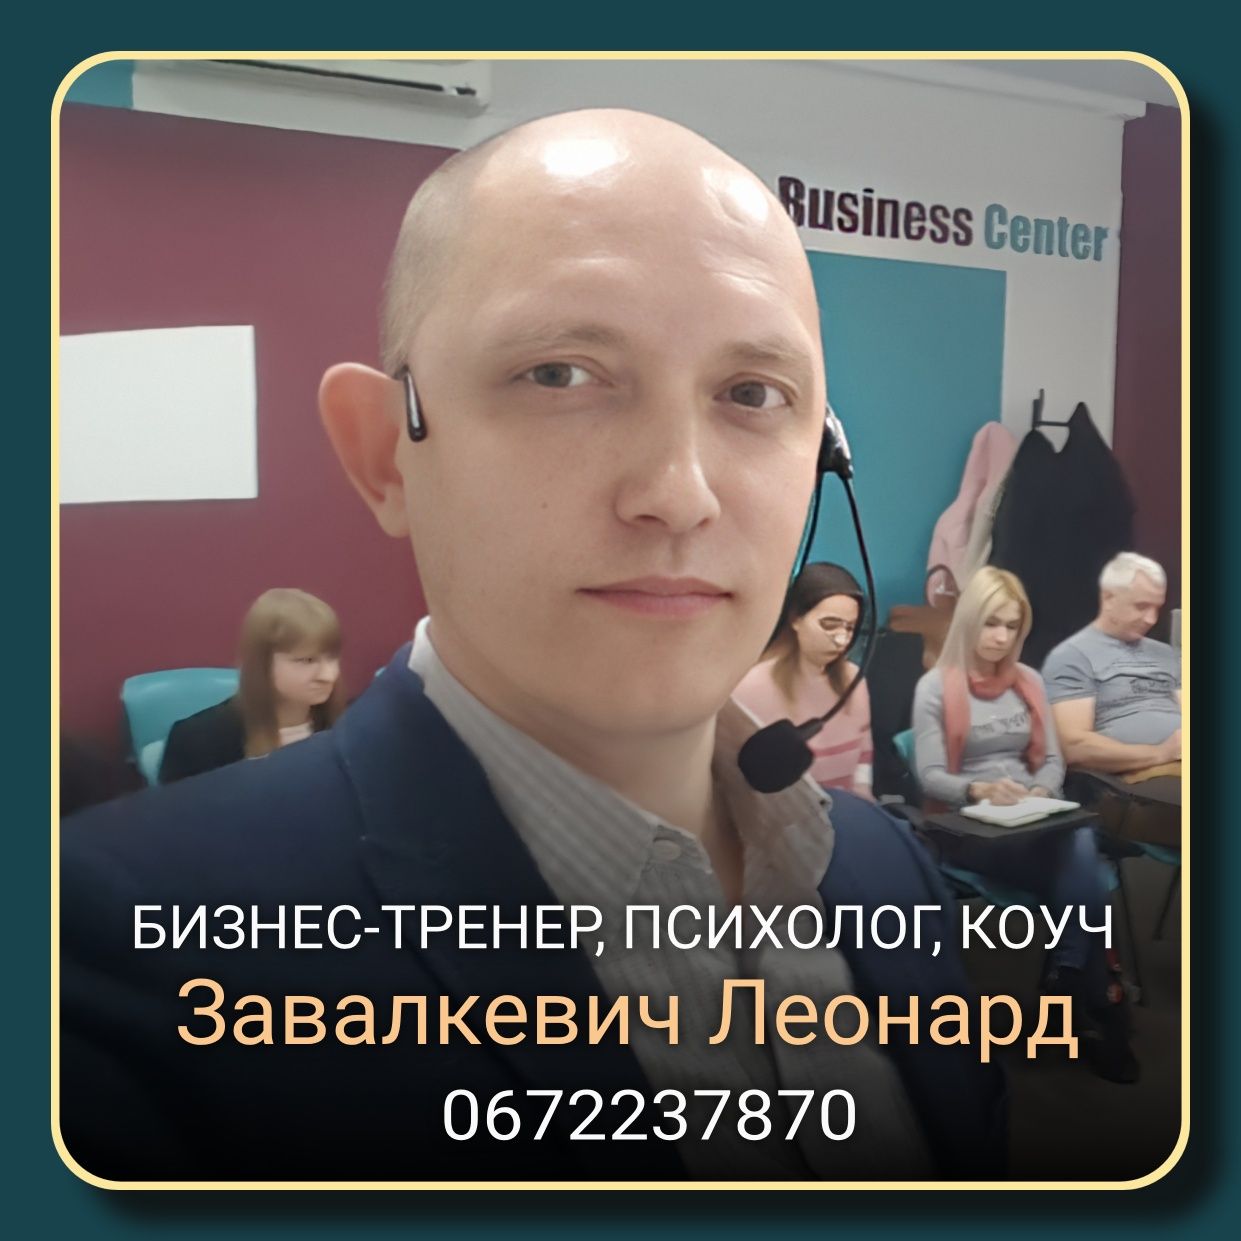 Психолог, коуч. 1000 онлайн, Киев